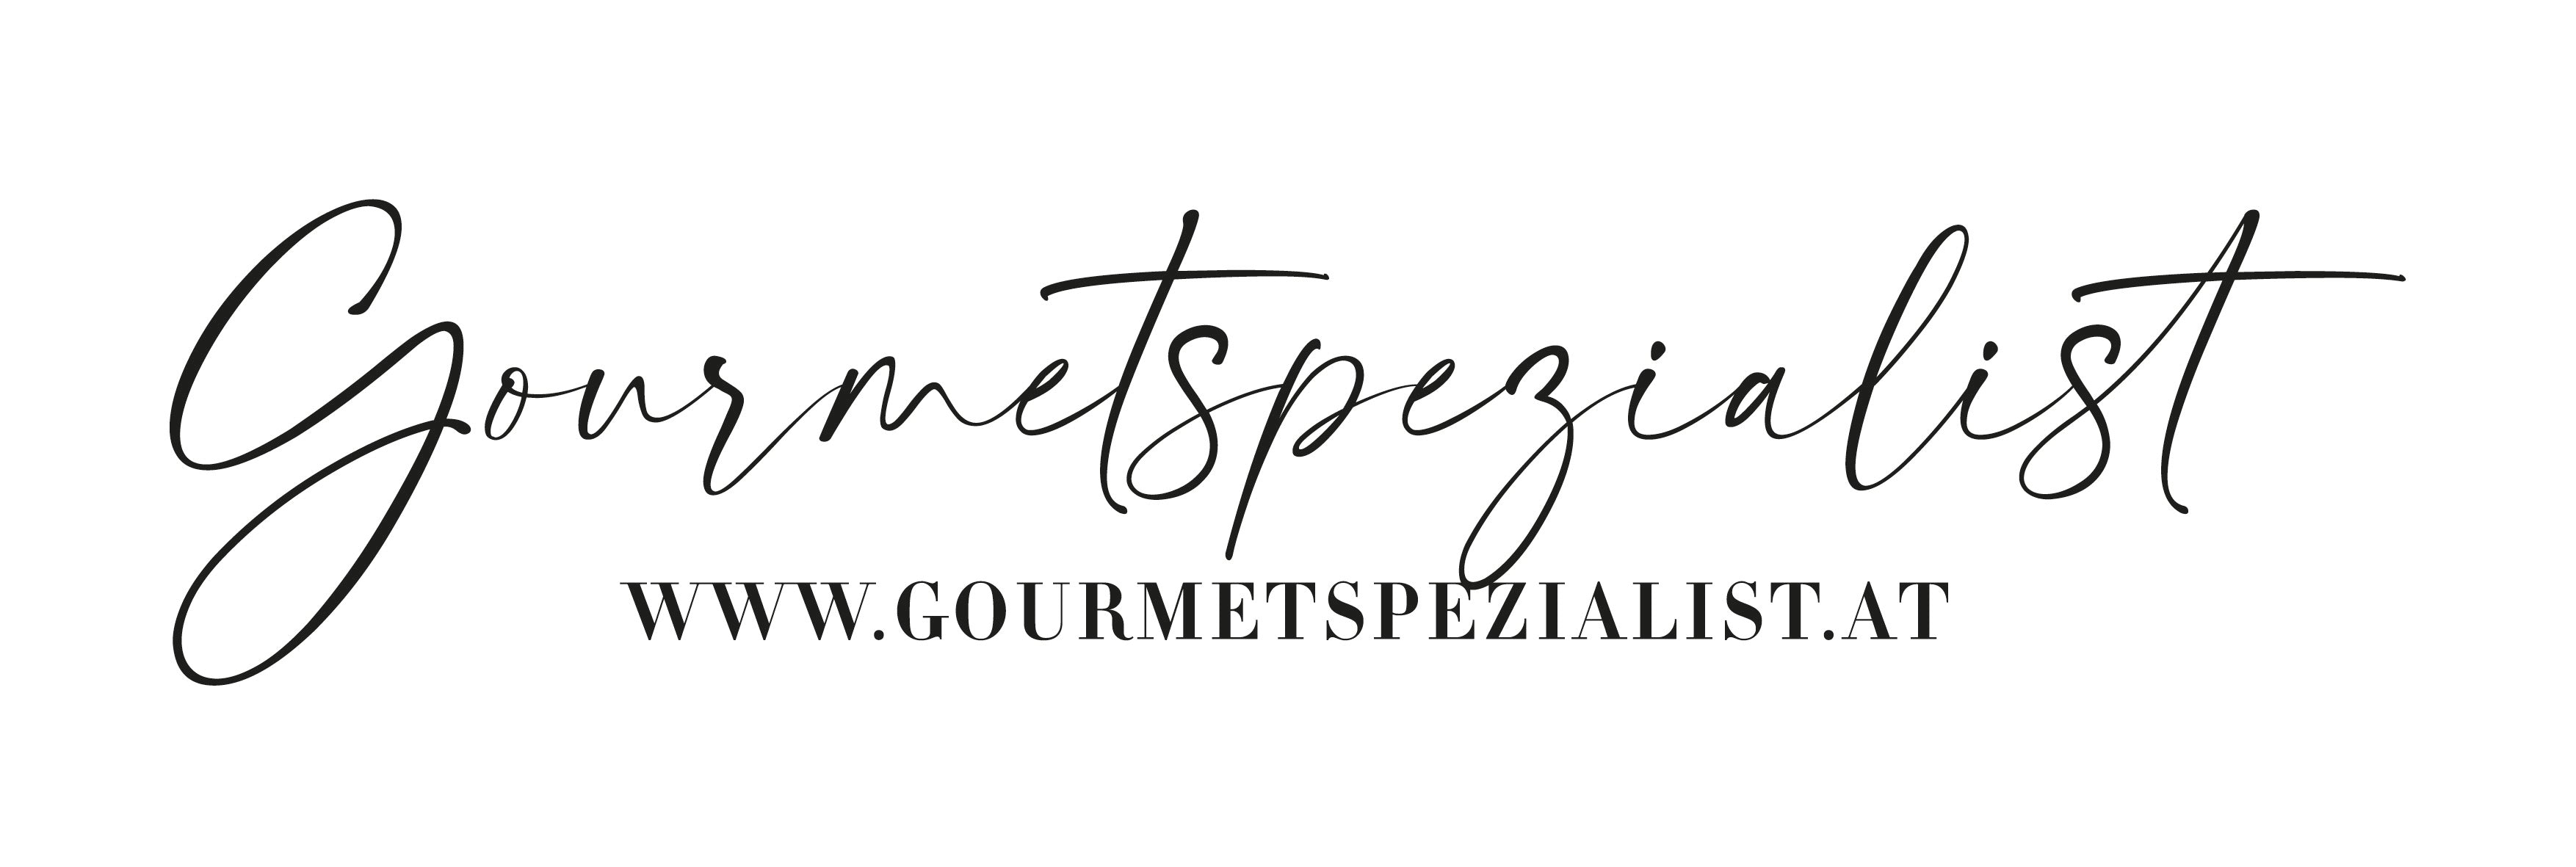 Logo Gourmetspezialist